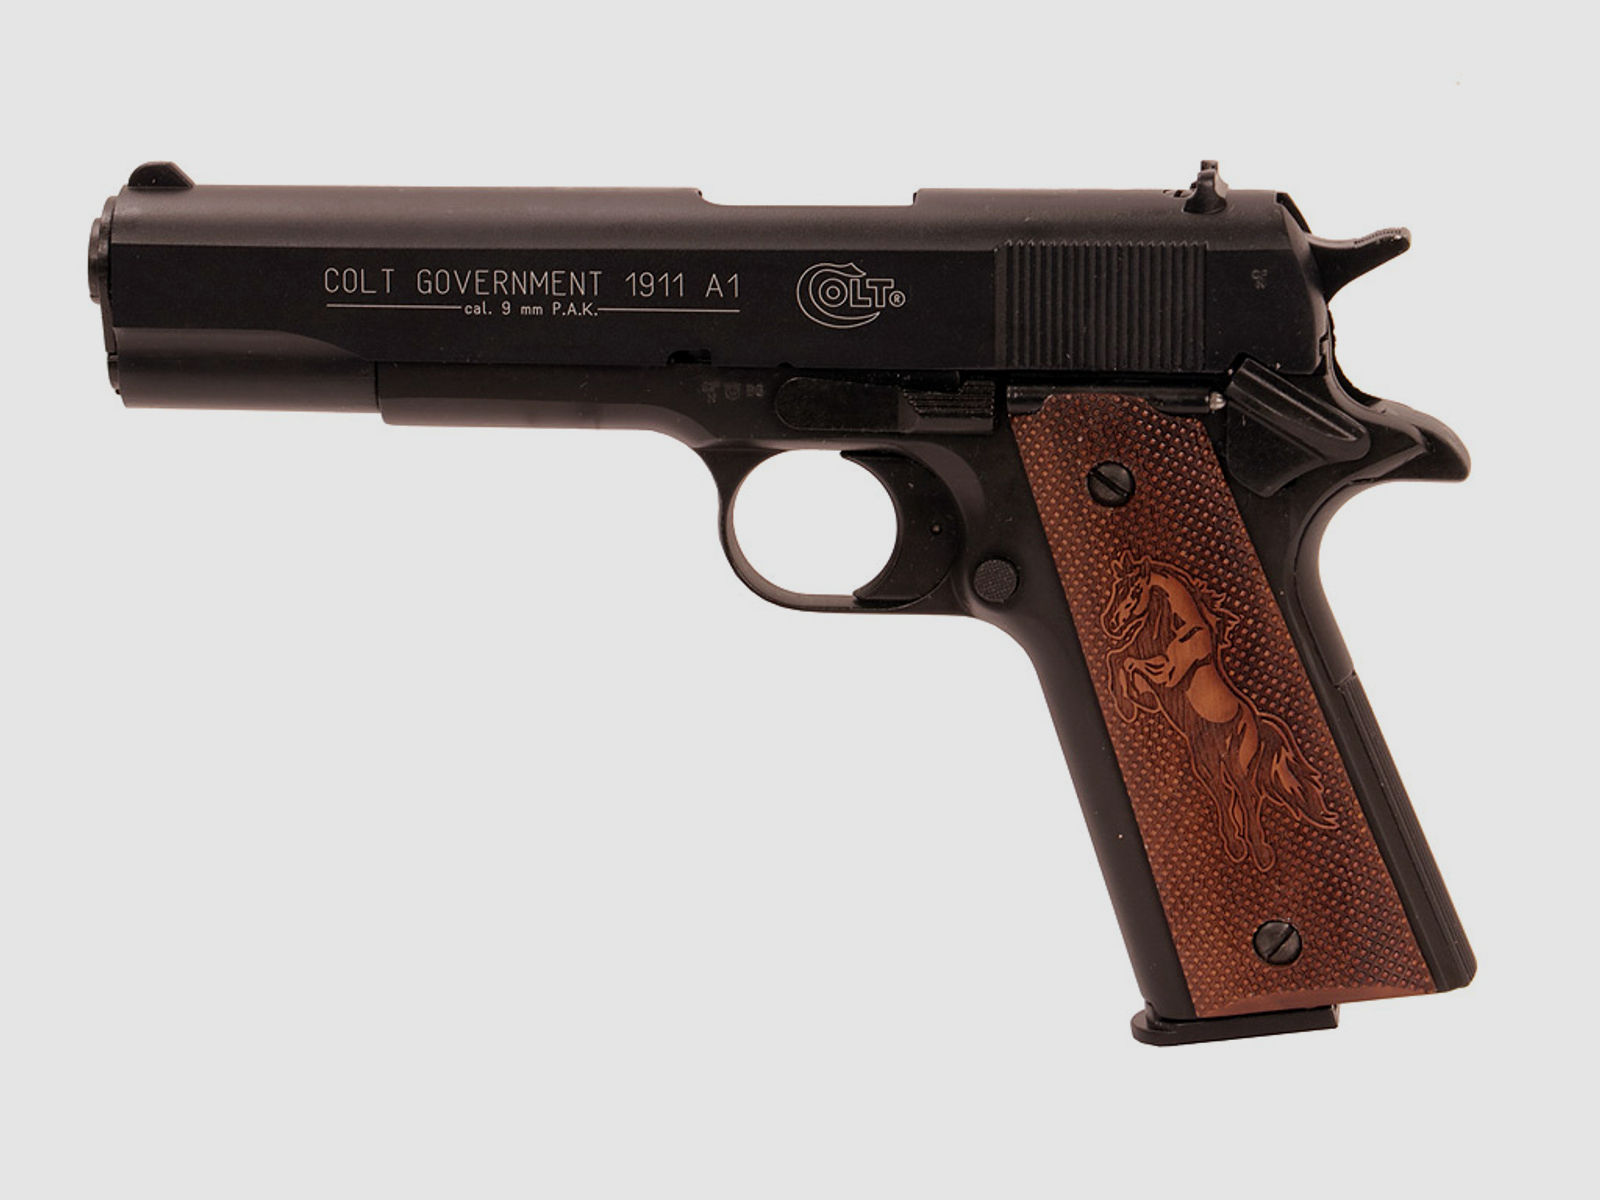 Holzgriffschalen fĂĽr Schreckschuss-, Gas-, Signalpistole Colt Government 1911 Mustang Fischhaut